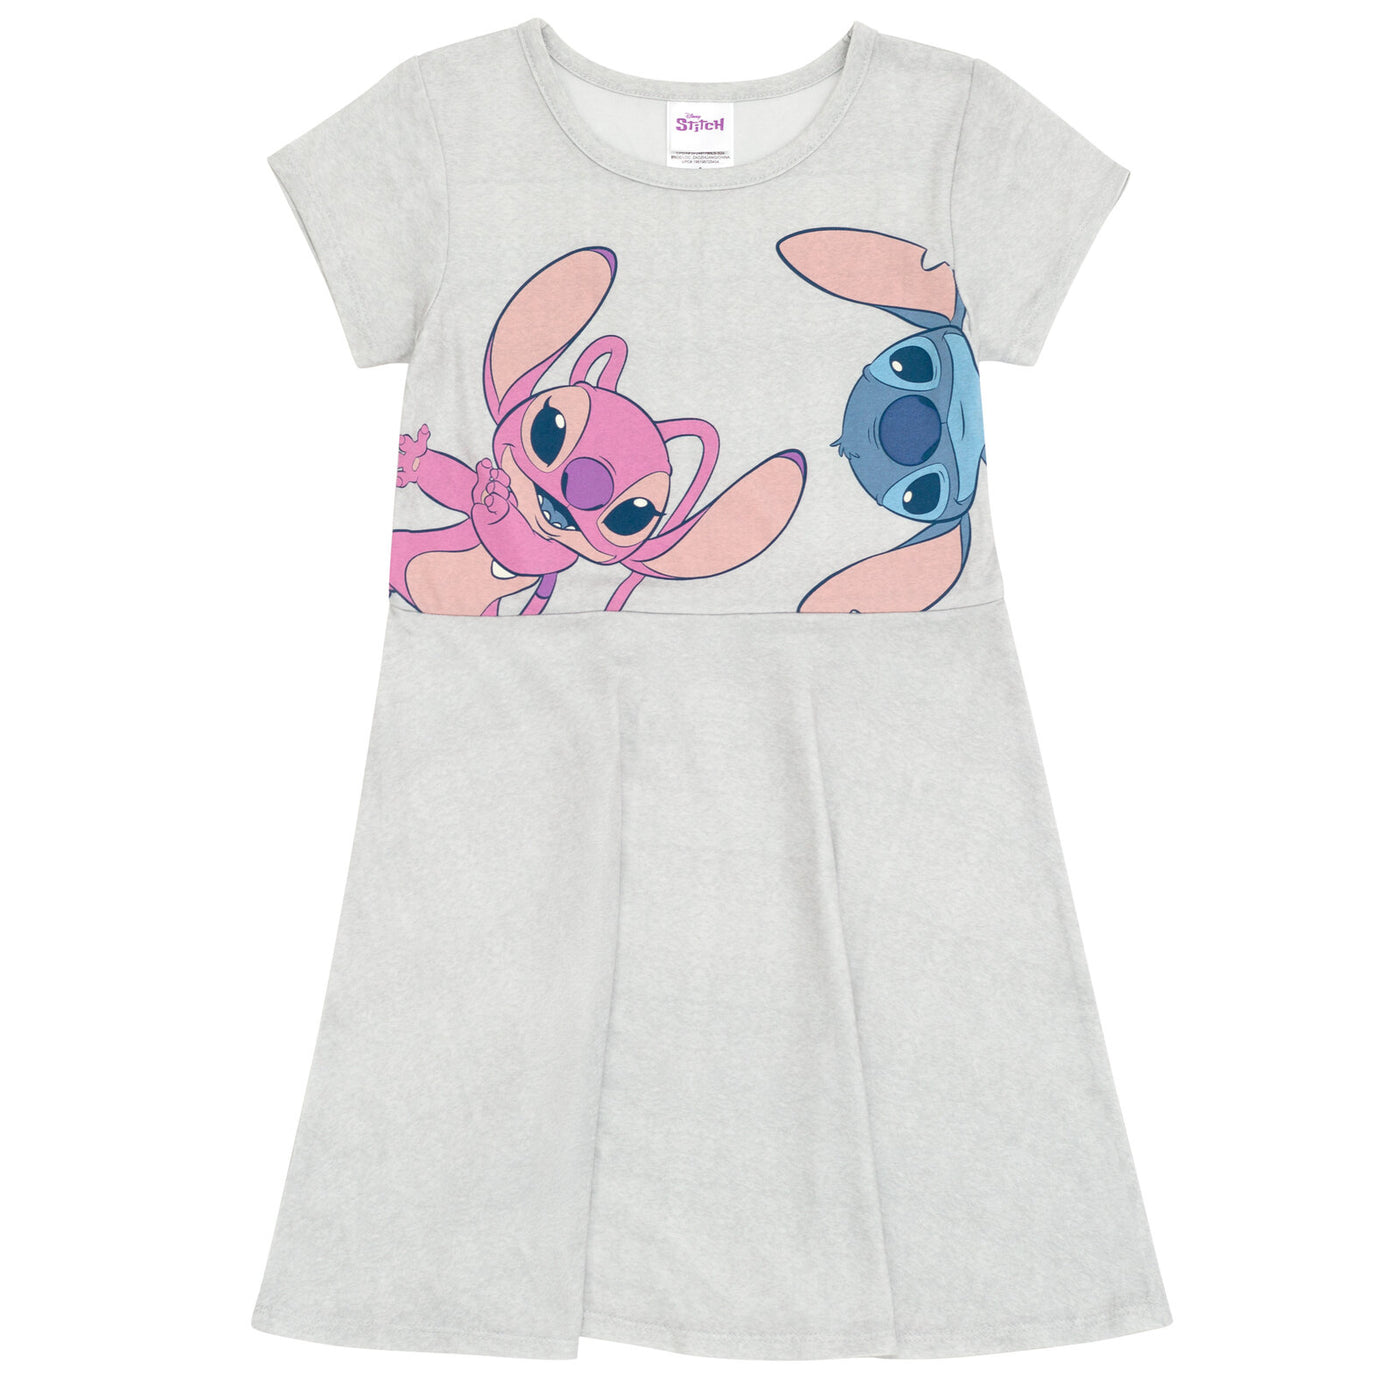 Paquete de 2 vestidos de manga corta anudados de Minnie Mouse